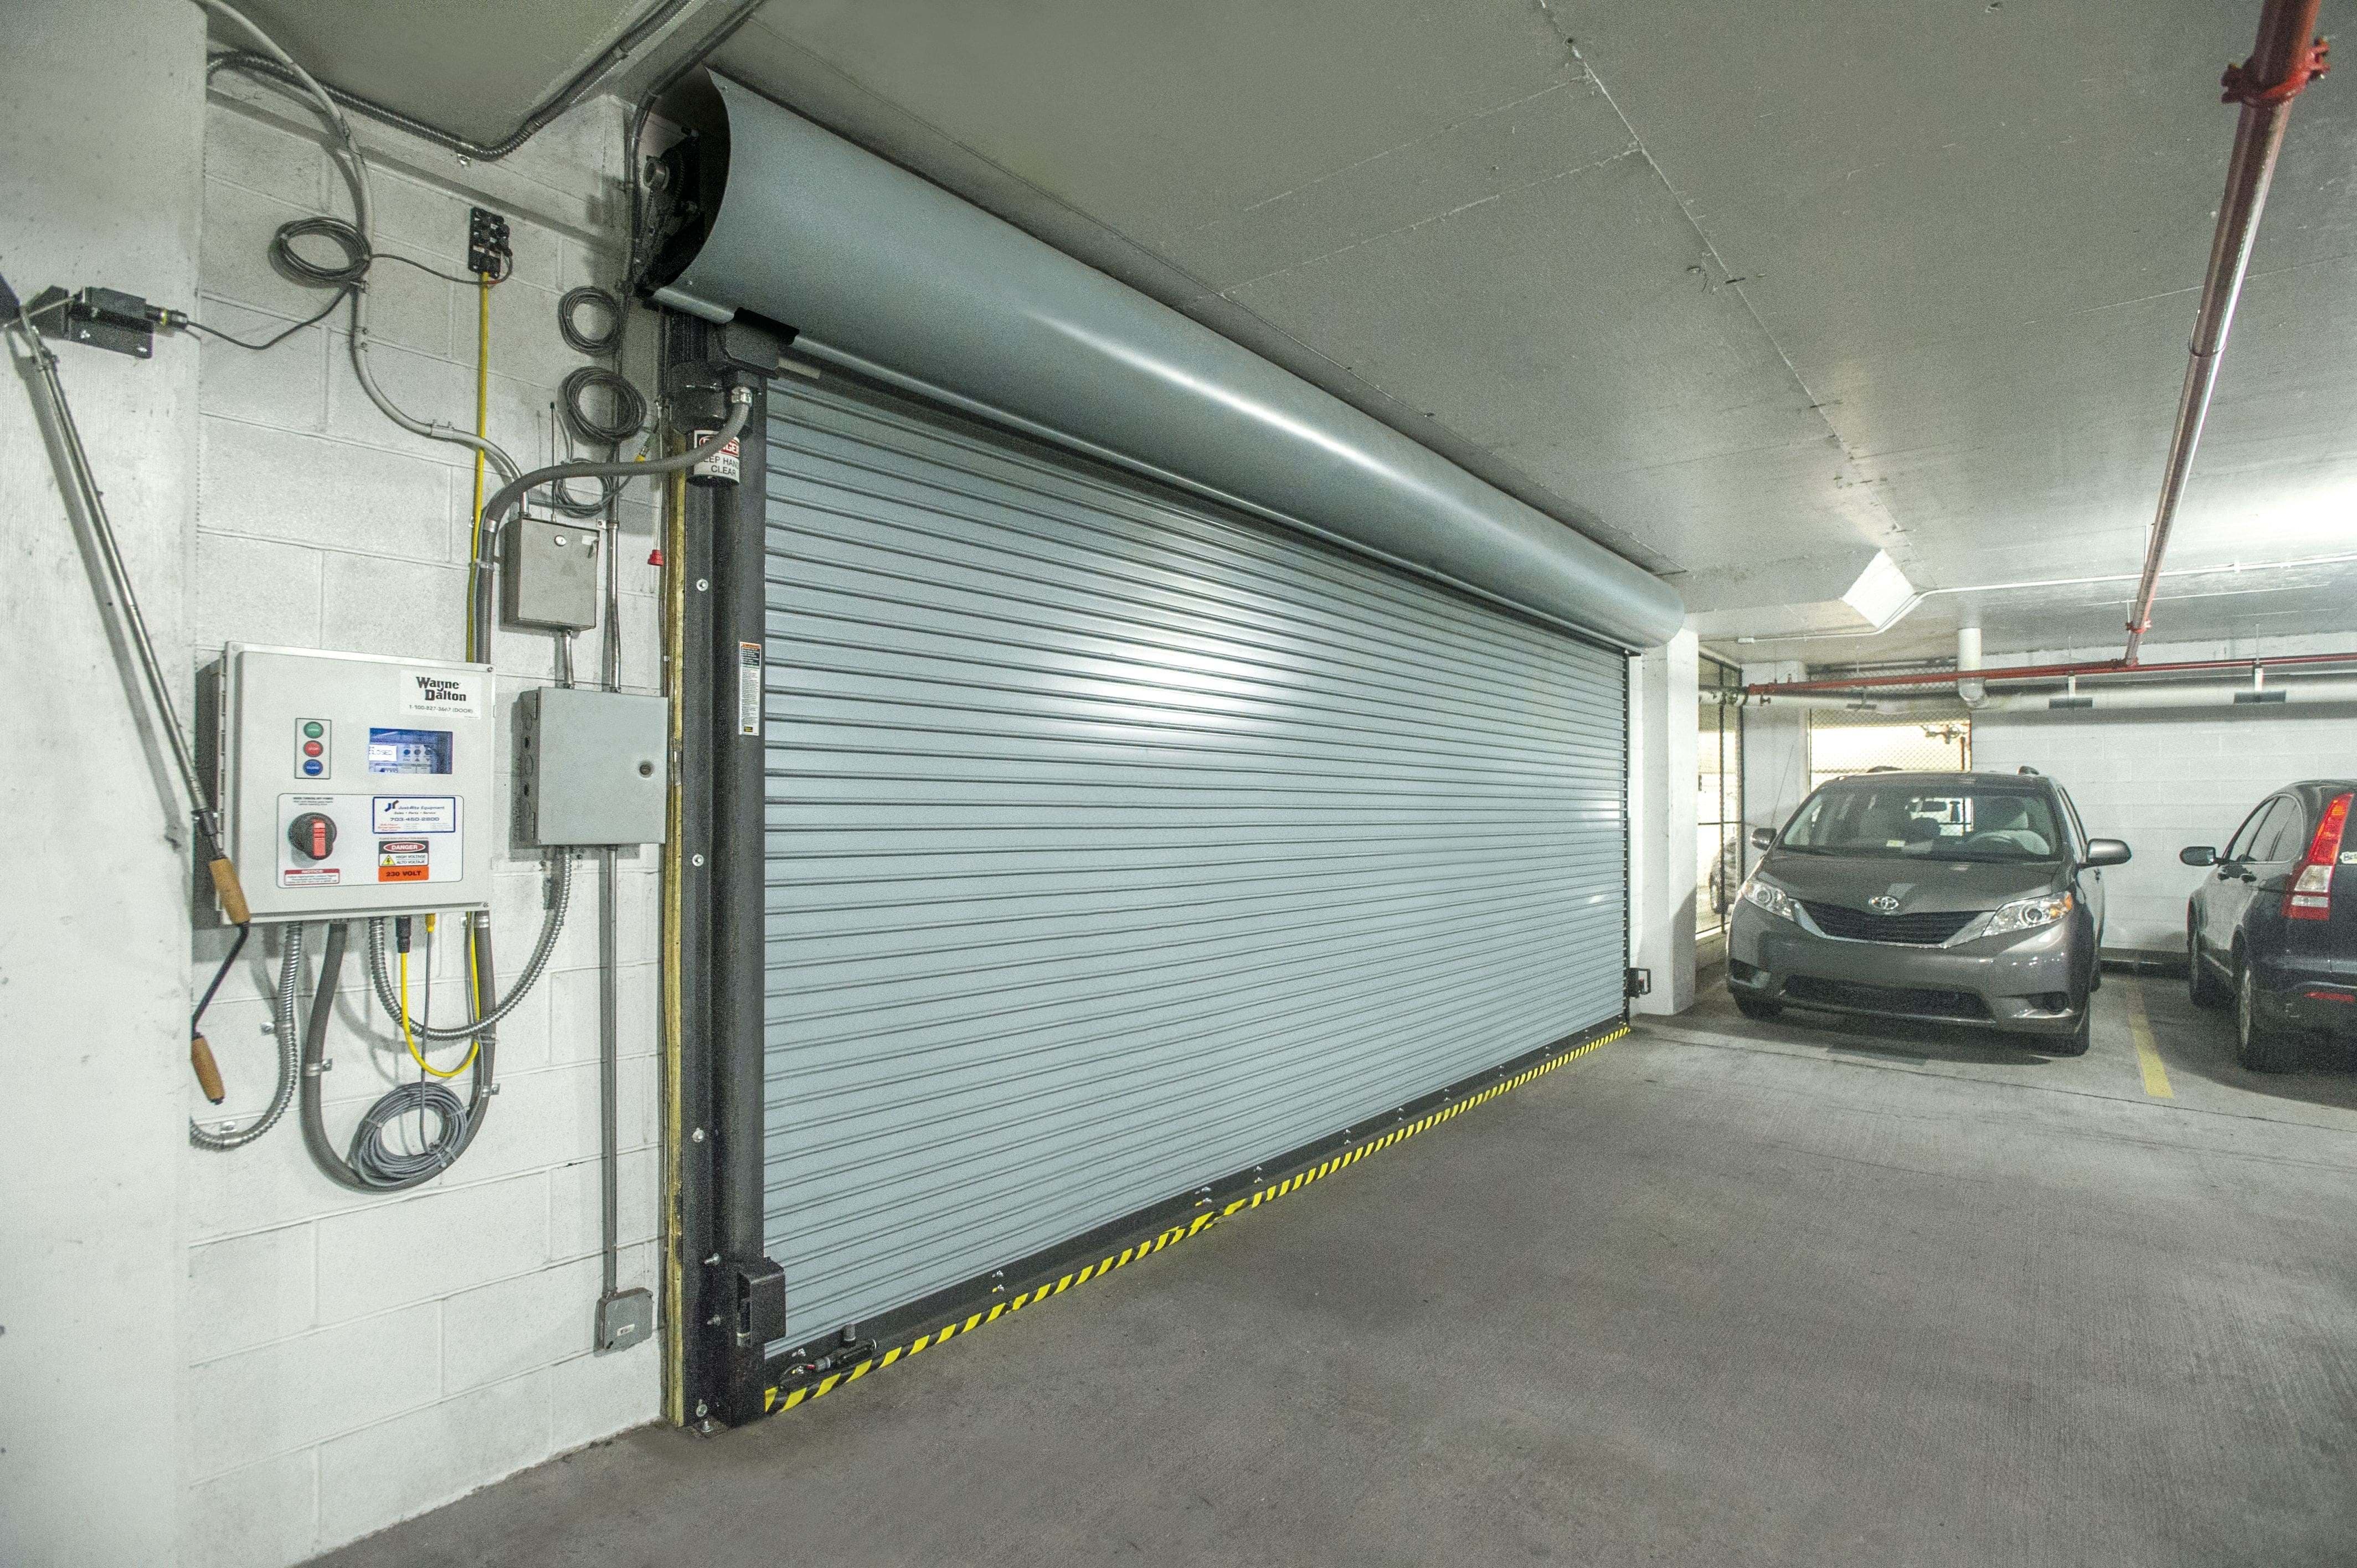 brand new wayne dalton rolling overhead door for underground parking gaarge